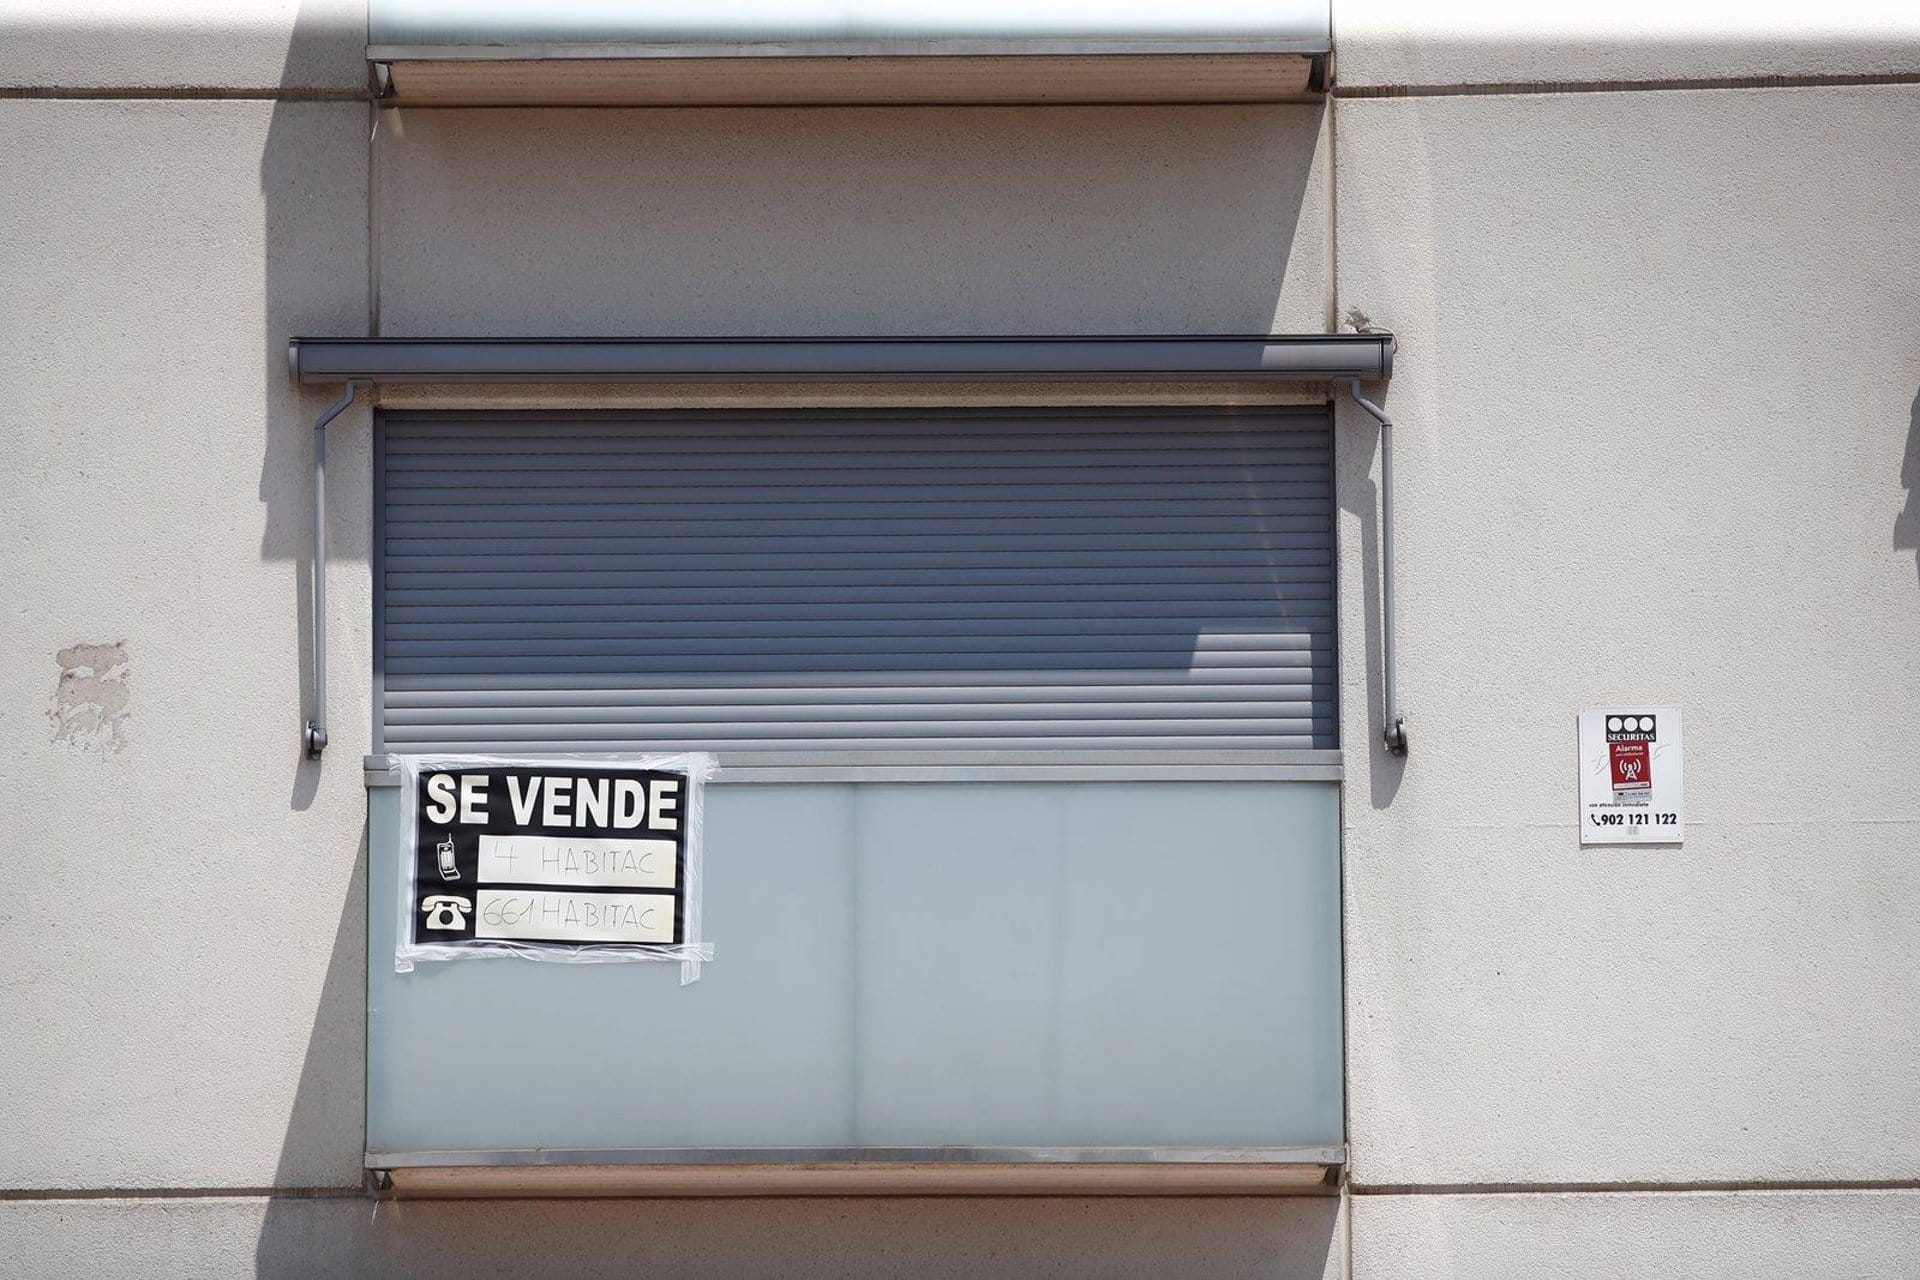 La Comunitat Valenciana registra 24.305 compraventas de viviendas en el primer trimestre, el mayor resultado desde 2007